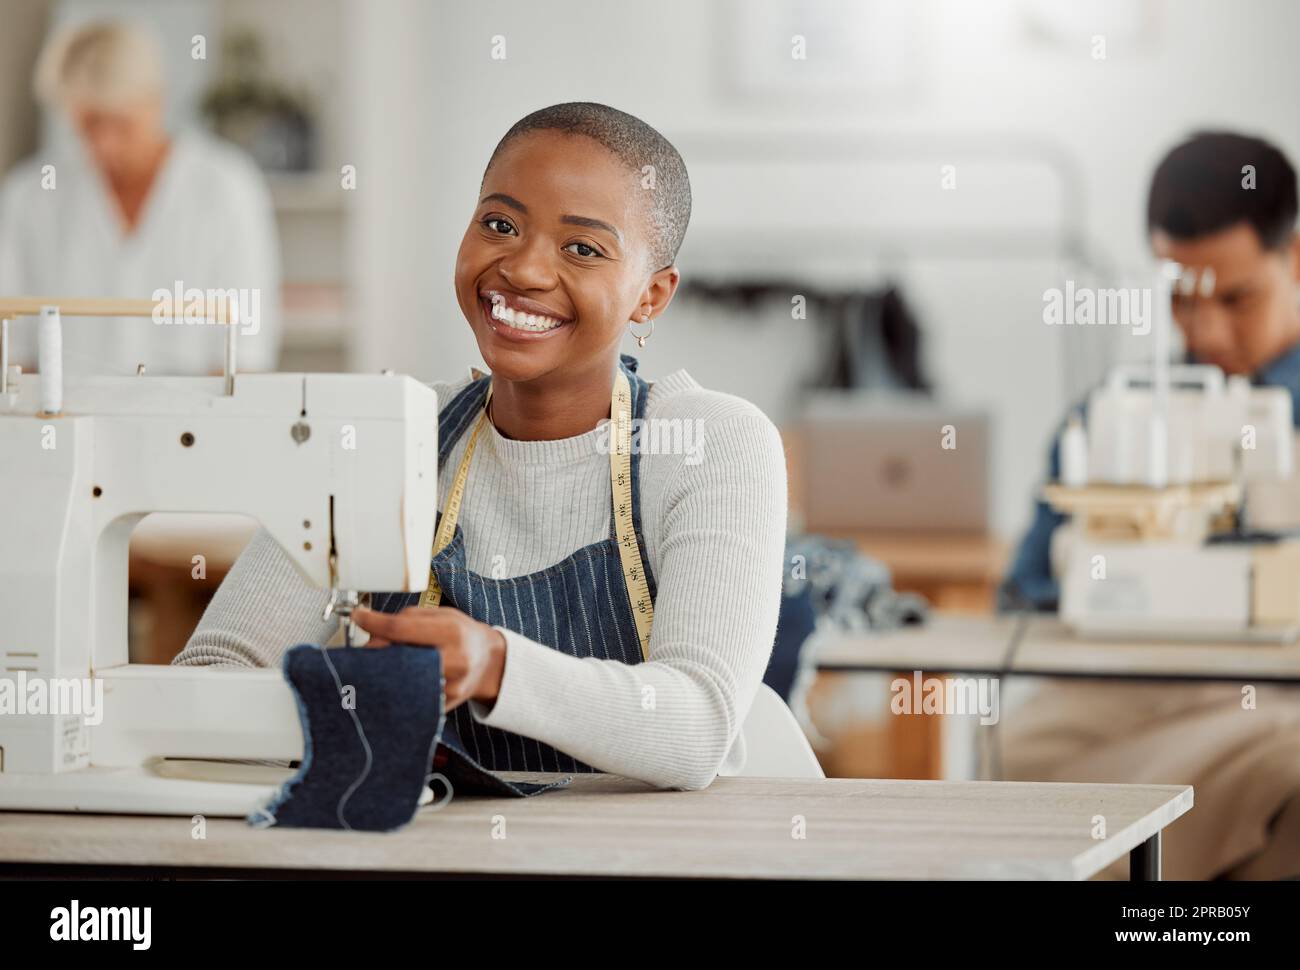 Glücklicher, kreativer schwarzer Modeschüler oder Designer, der im Unterricht an einer Nähmaschine sitzt und lächelt, die an Kleidung arbeitet. Isoliertes Porträt eines wunderschönen afroamerikanischen Schneiders in einer Fabrik oder einem Studio. Stockfoto